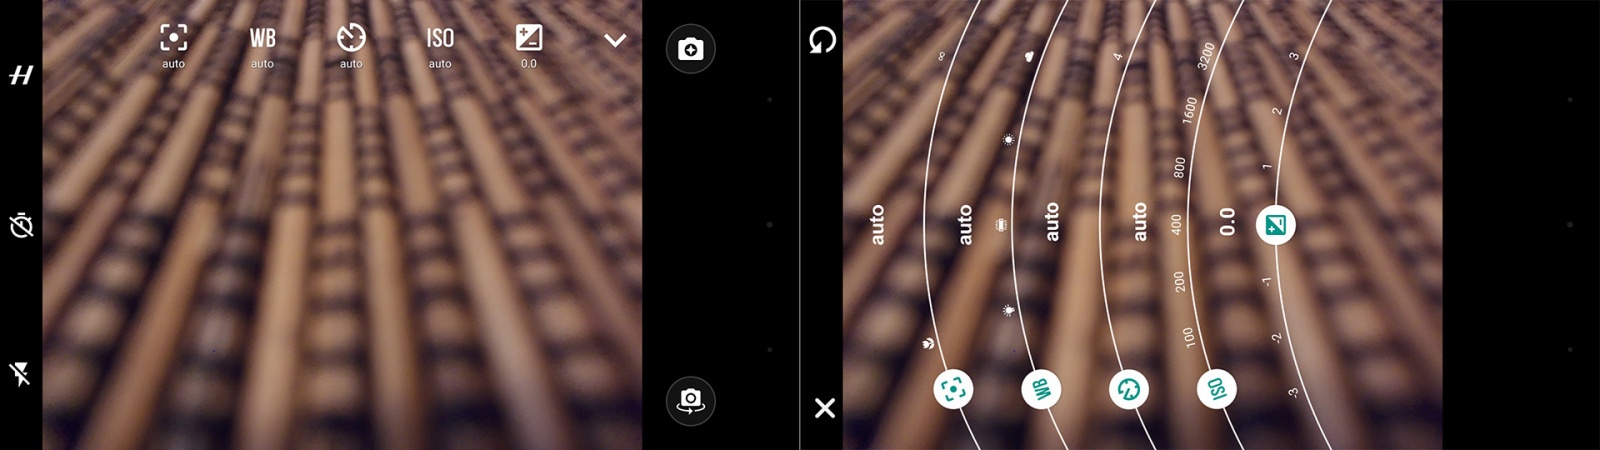 Фотомодуль Hasselblad True Zoom для Moto Z: для чего он нужен и на что способен? - 12